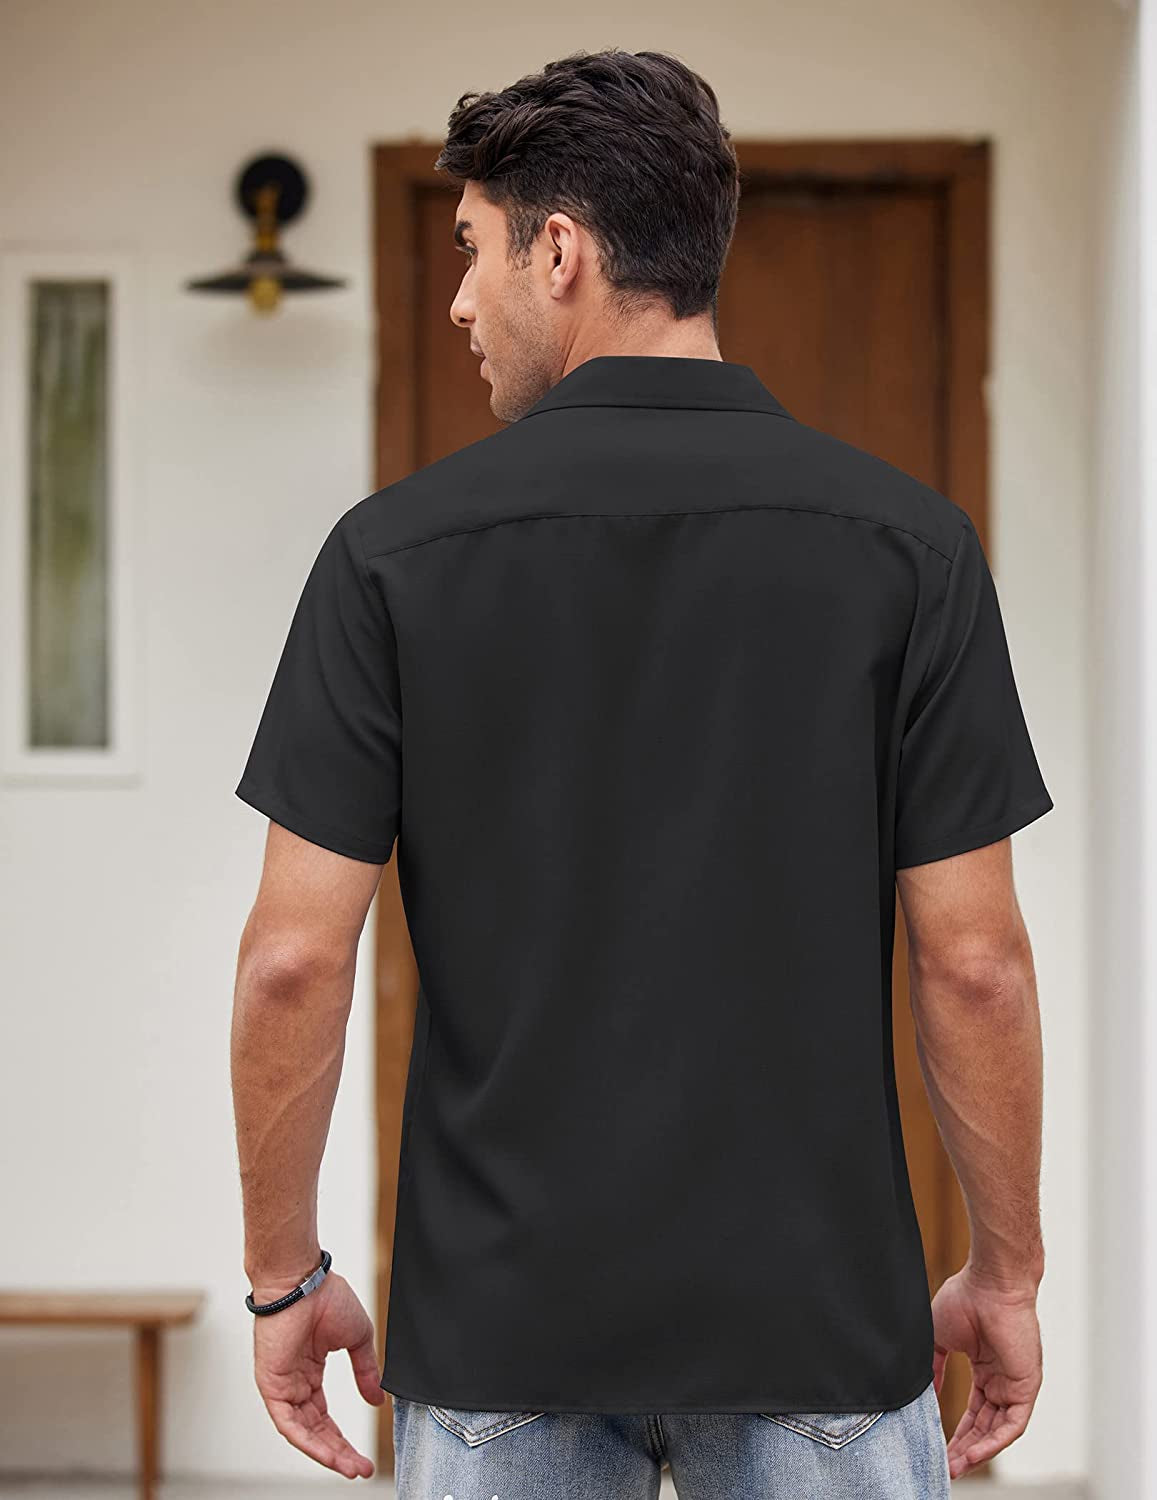 Men'S Vintage Bowling Shirt Short Sleeve Button down Summer Cuba Beach Shirts